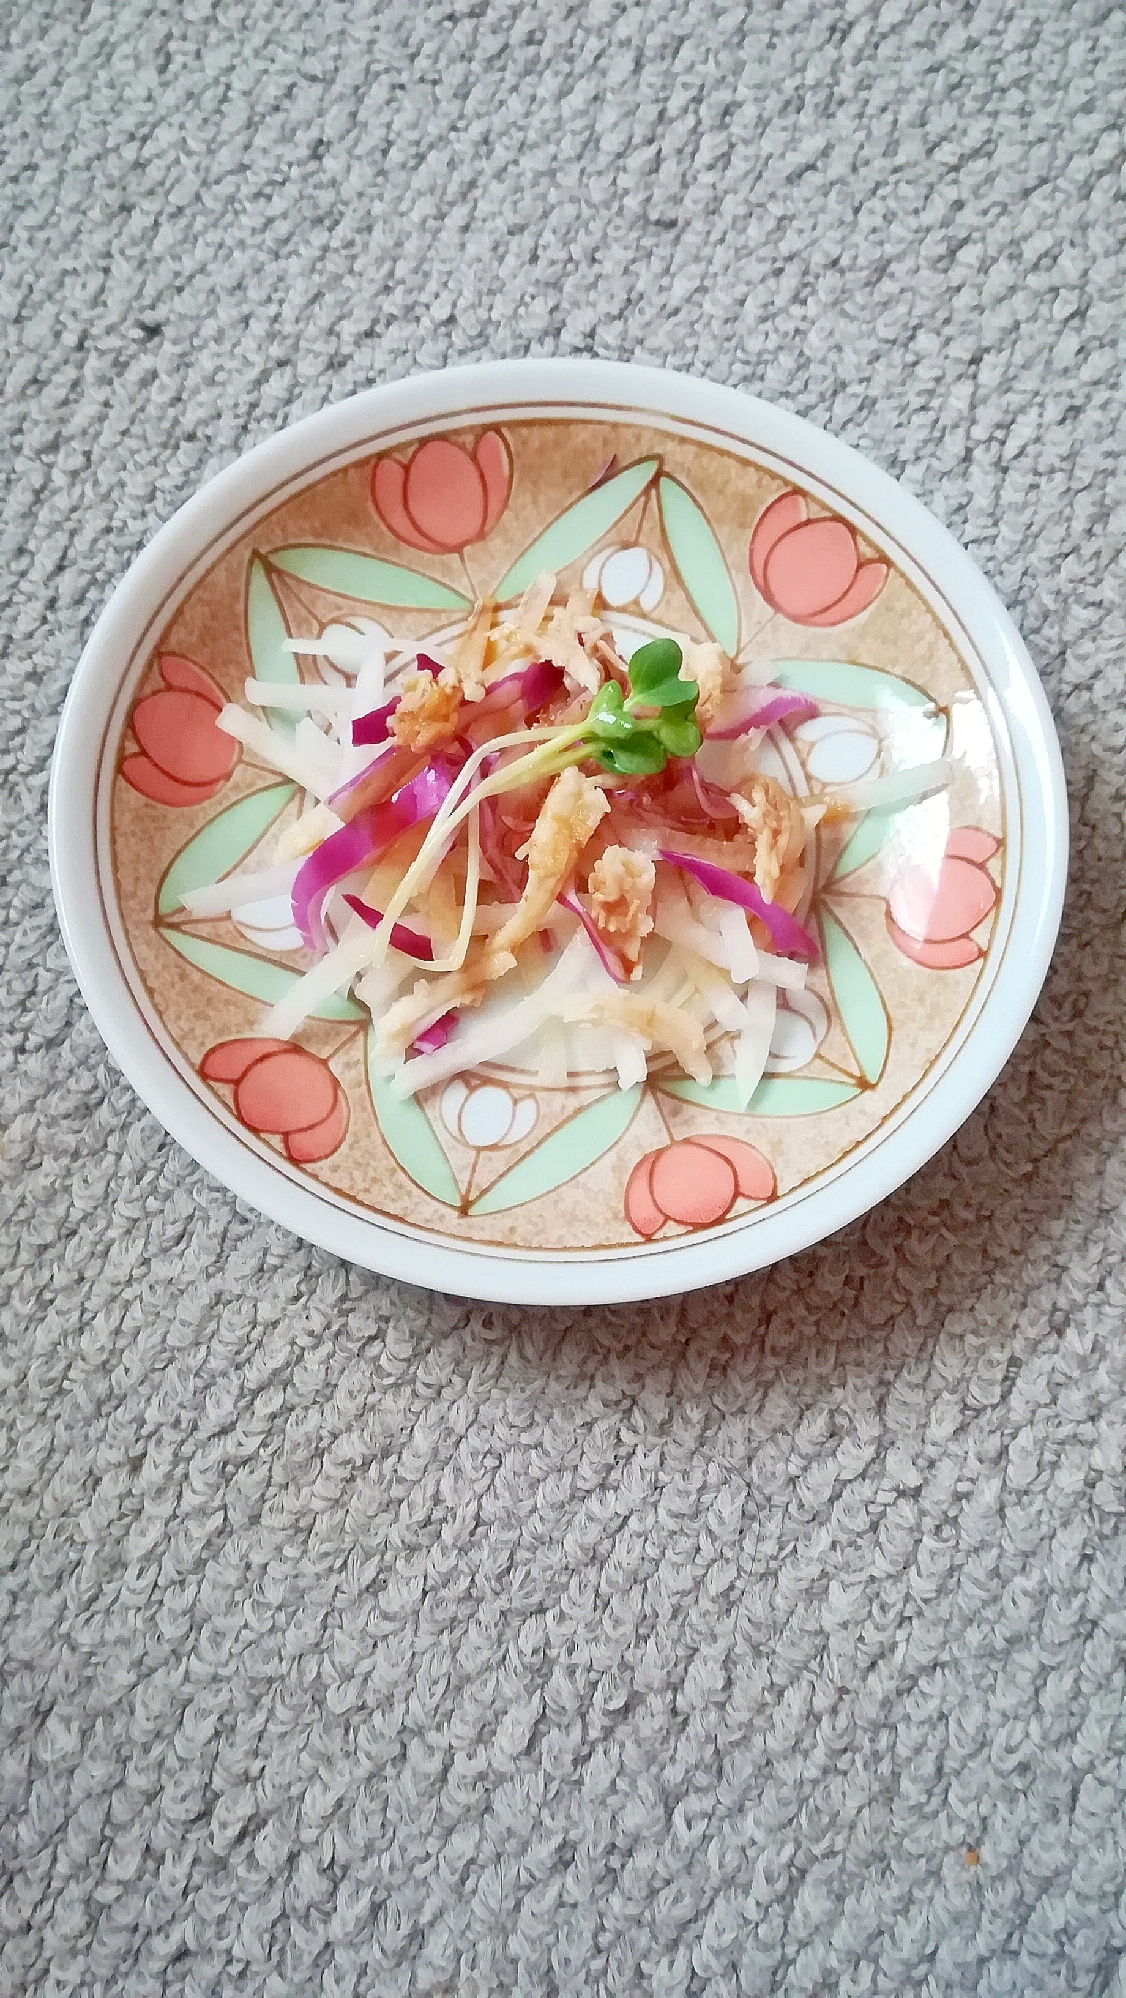 紫キャベツと鶏ハムの大根サラダ☆おかかポン酢風味